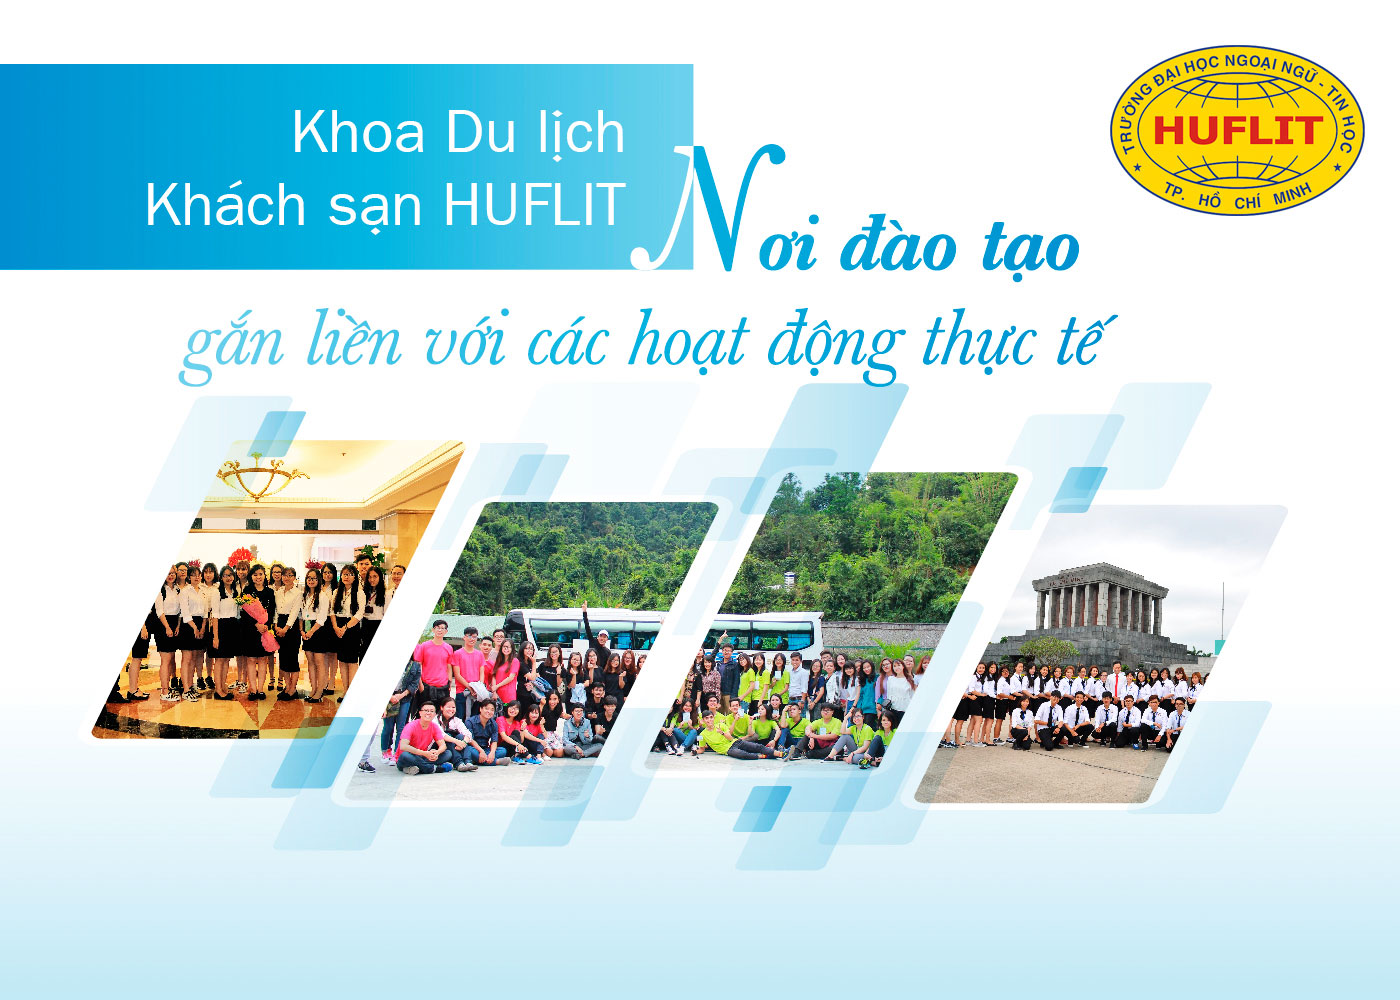 Khoa Du lịch - khách sạn HUFLIT - Nơi đào tạo gắn liền với các hoạt động thực tế - Ảnh 1